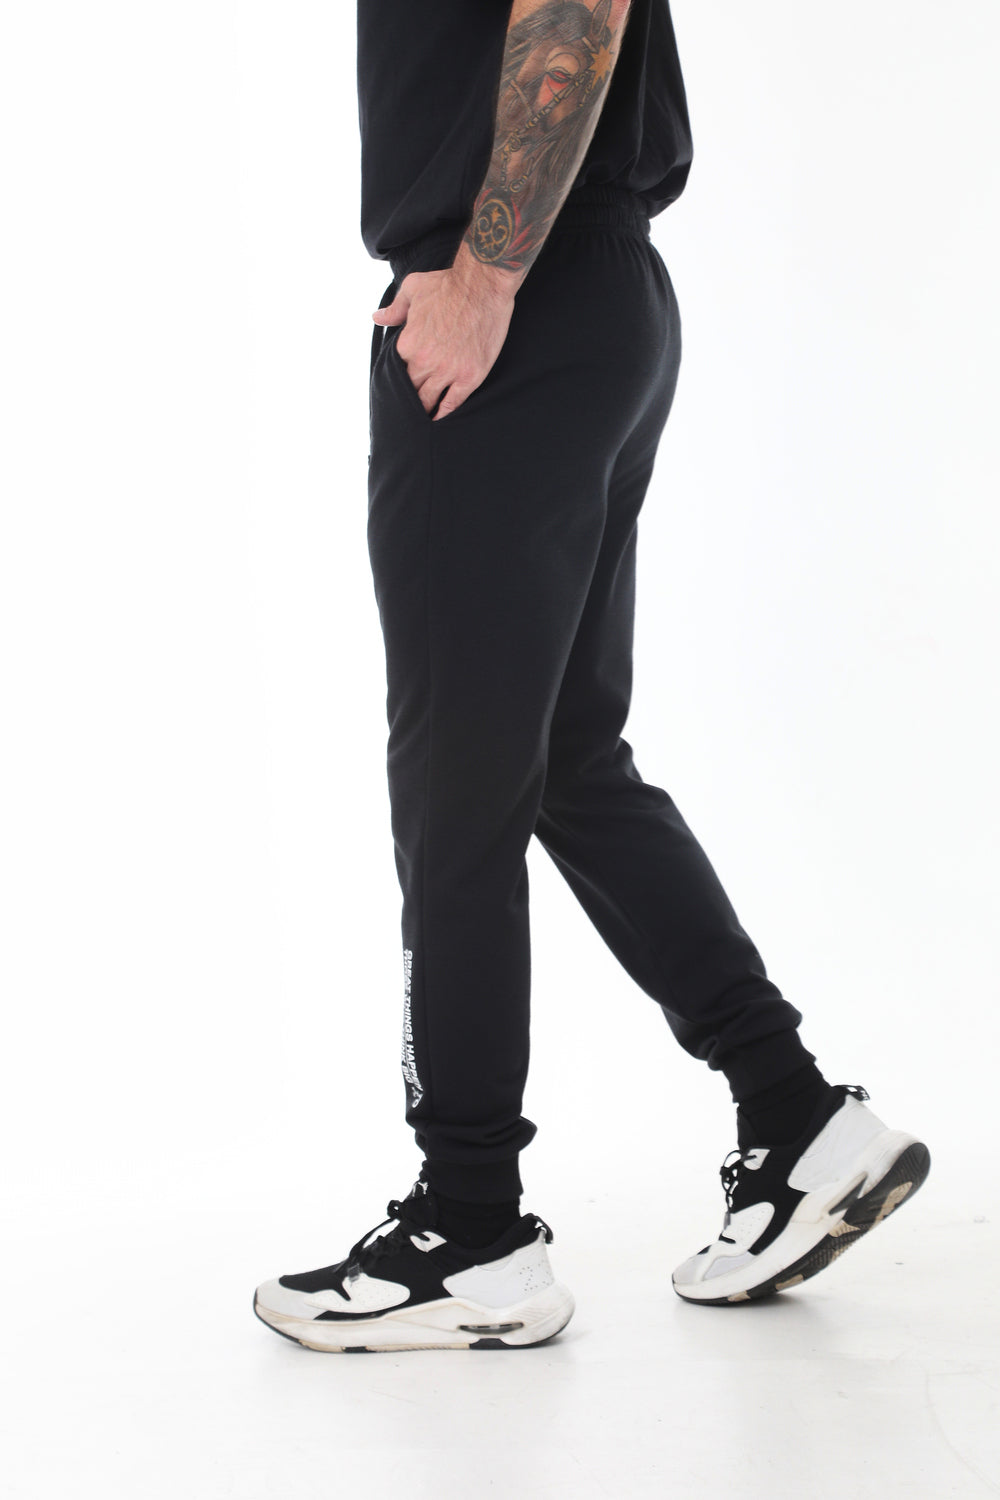 Pantalón negro silueta semi-ajustada, estampado en pierna y bota para hombre